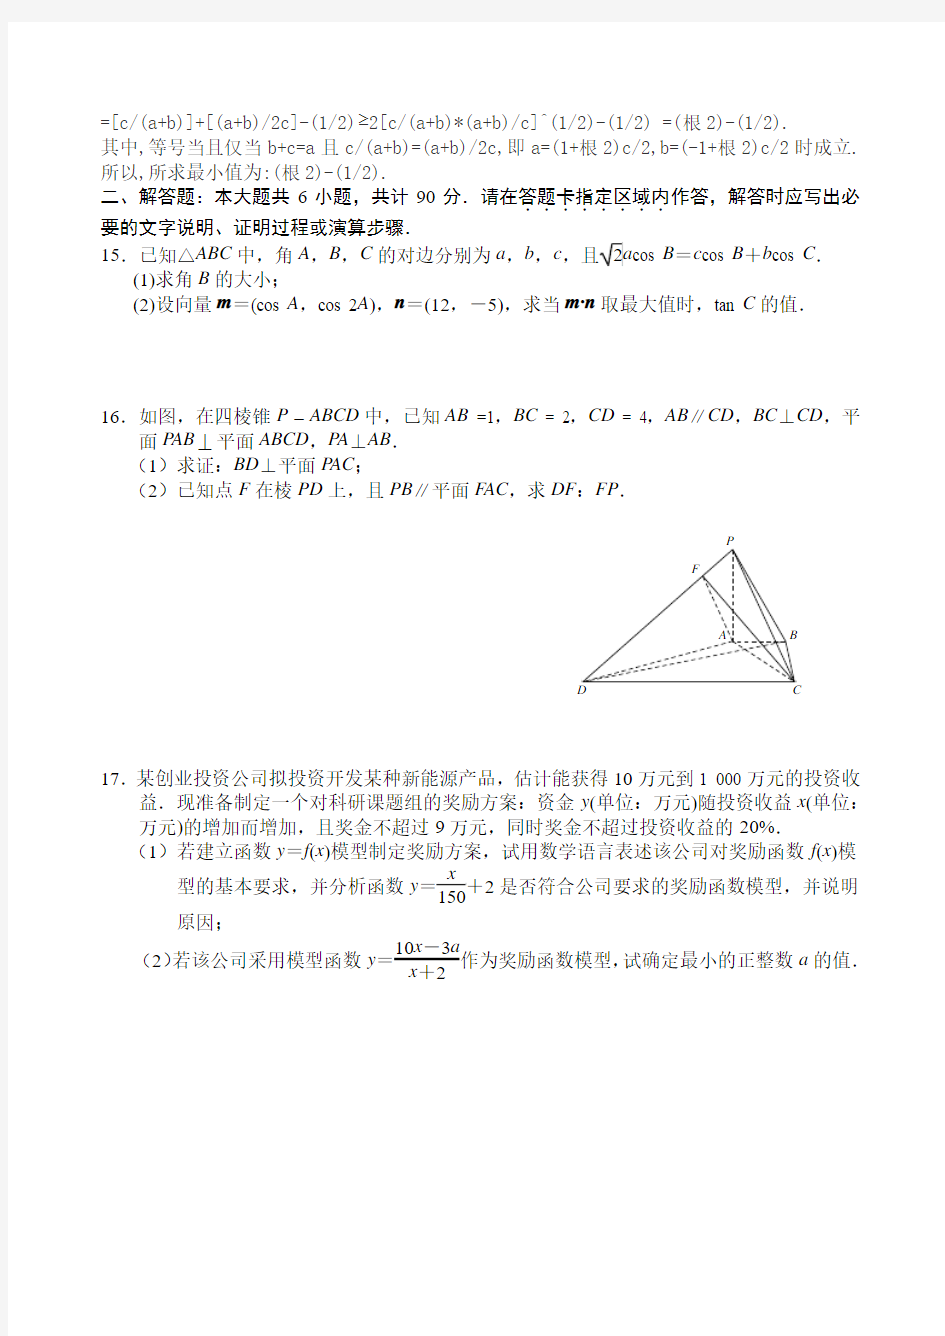 苏州大学2014届高考数学考前指导卷【1】及答案